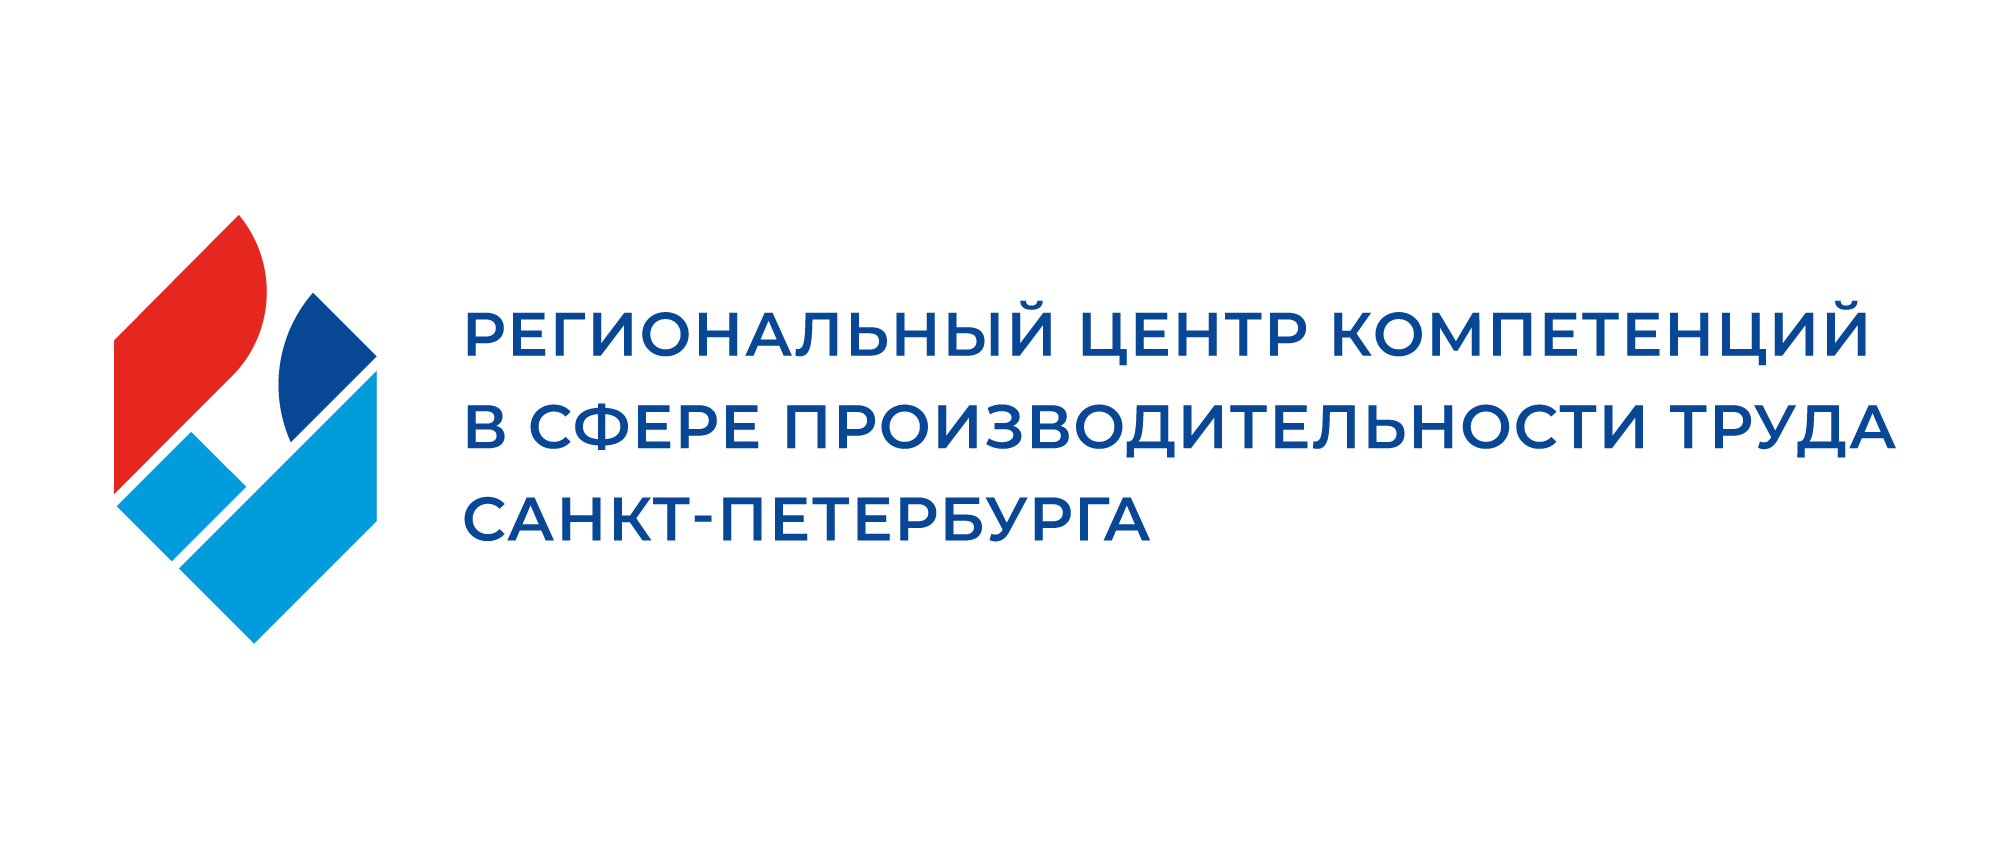 Региональный центр компетенций в сфере производительности труда Санкт-Петербурга